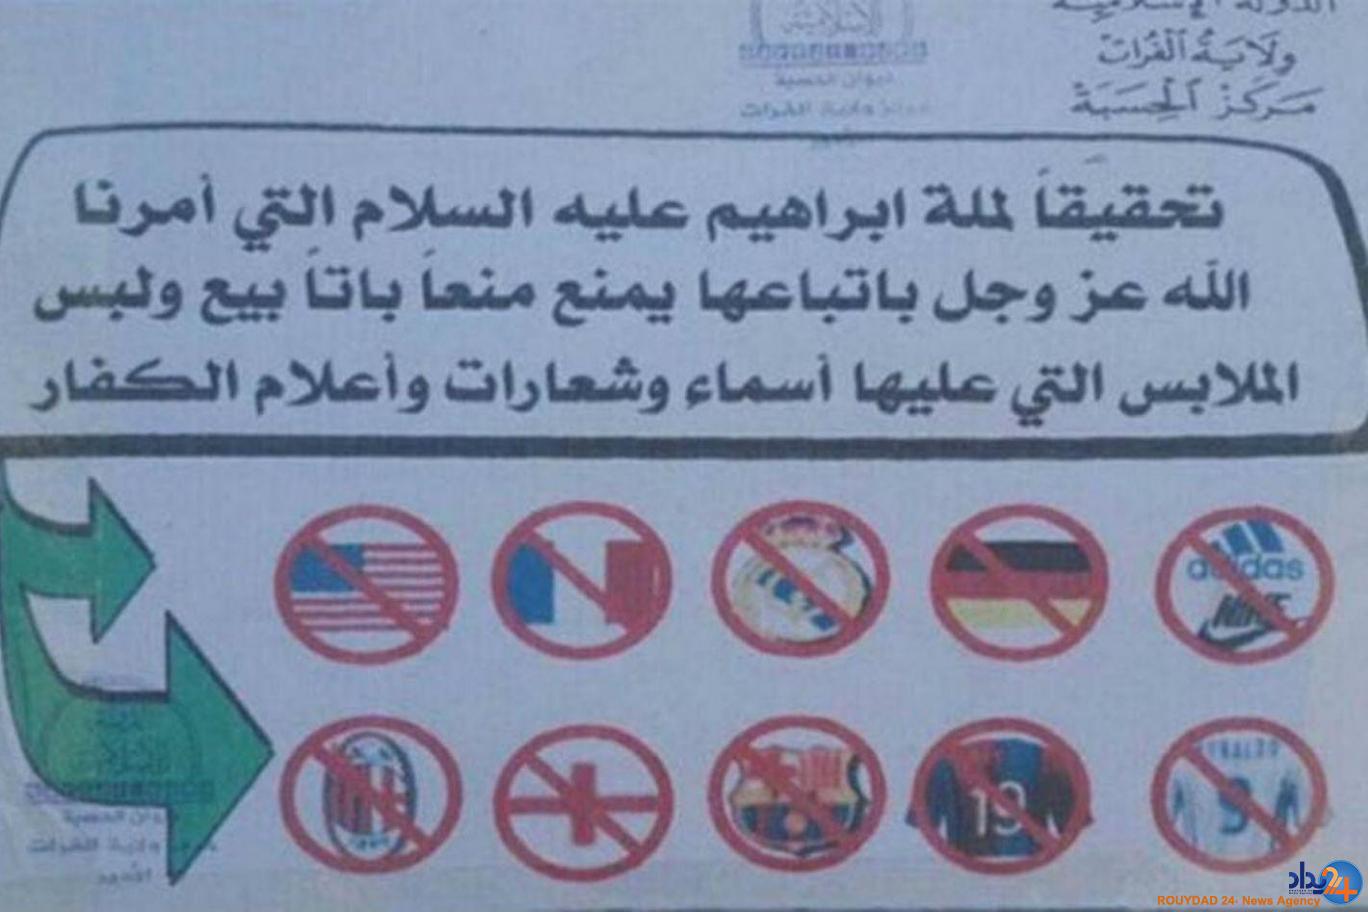 داعش استفاده از این لوگوها را ممنوع اعلام کرد (تصویر)